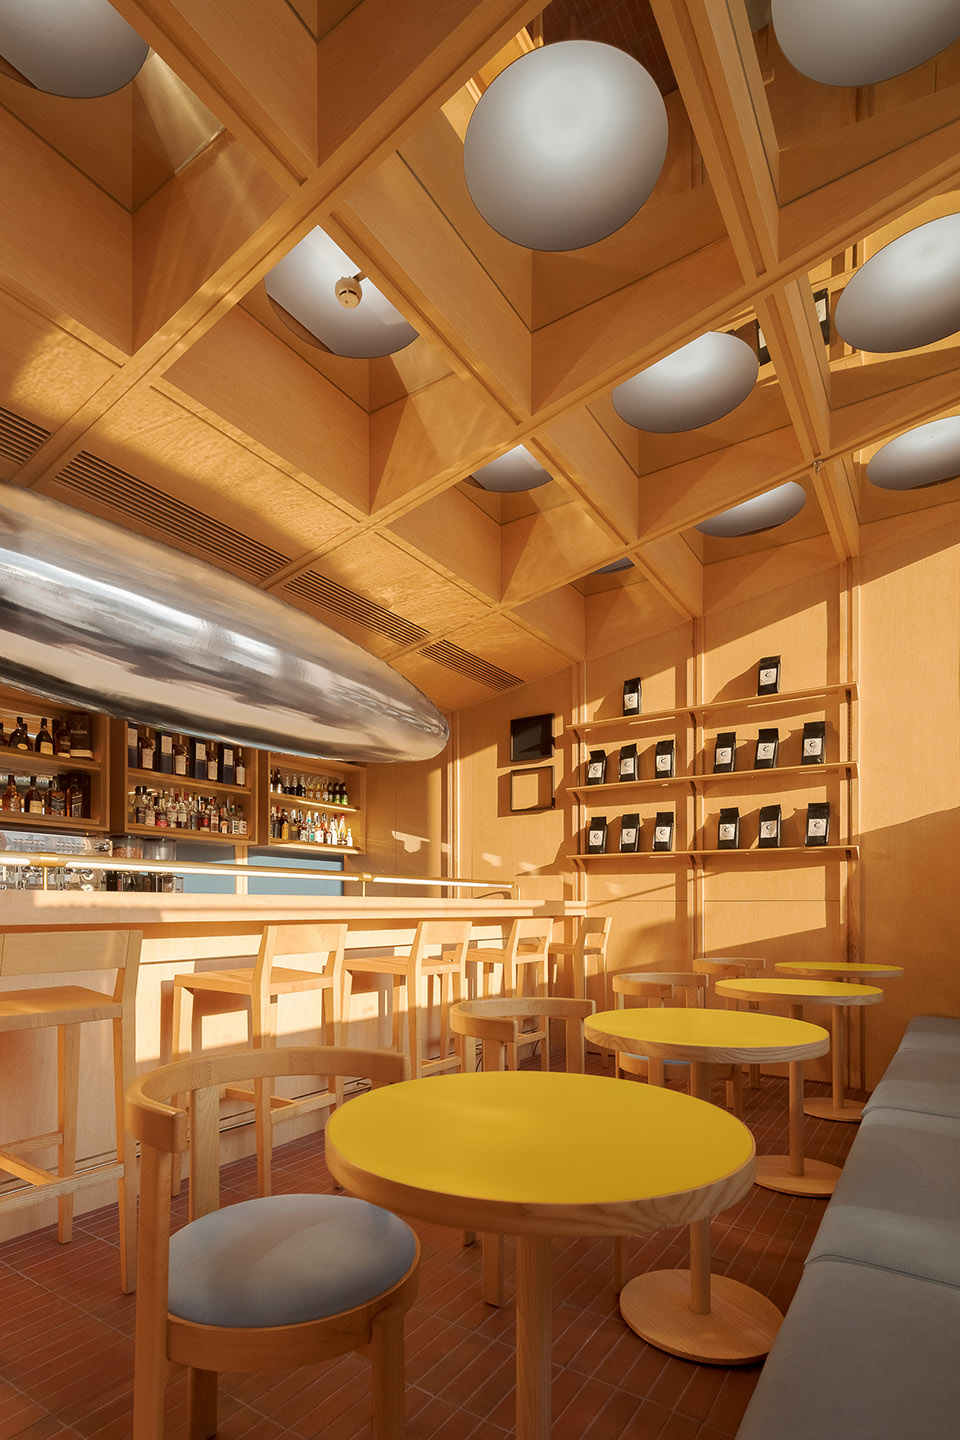 浮廊C2 Cafe &  Bar咖啡厅，深圳/专门为年轻人打造的“空中楼阁”-67